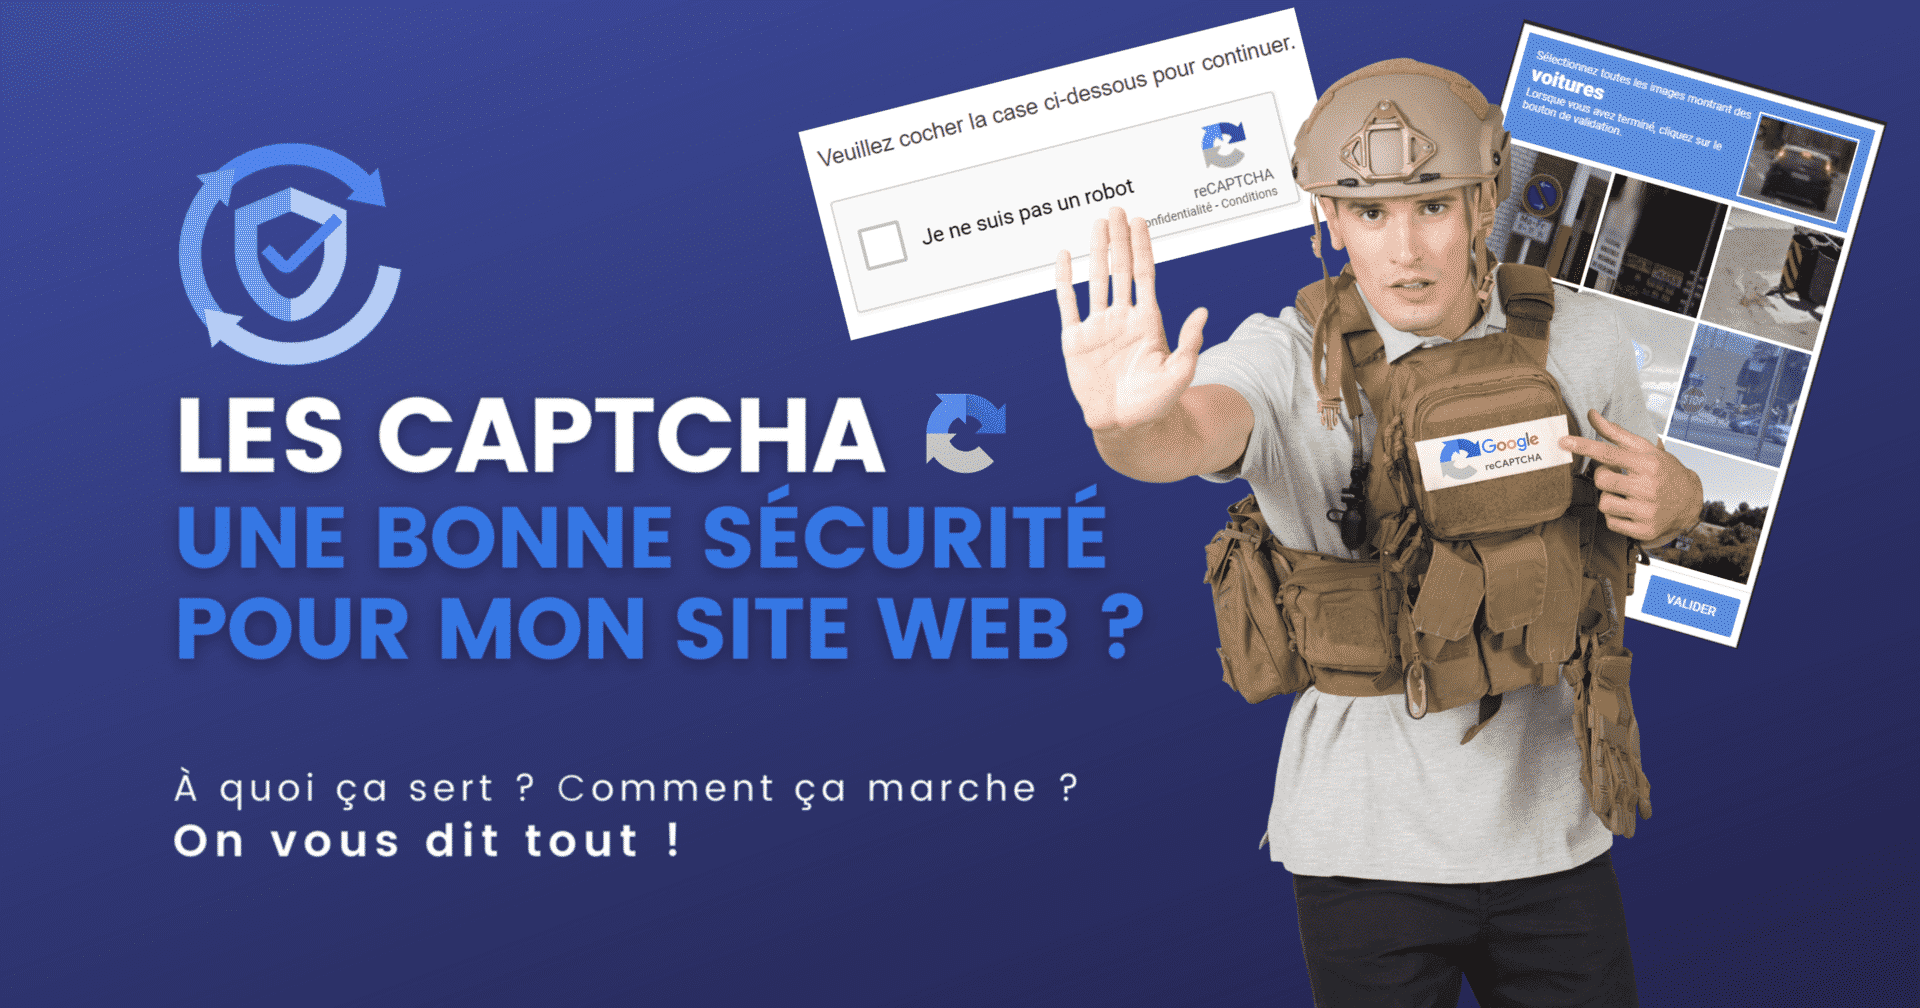 Les CAPTCHA : une bonne sécurité pour mon site web ? - Agence IDEO